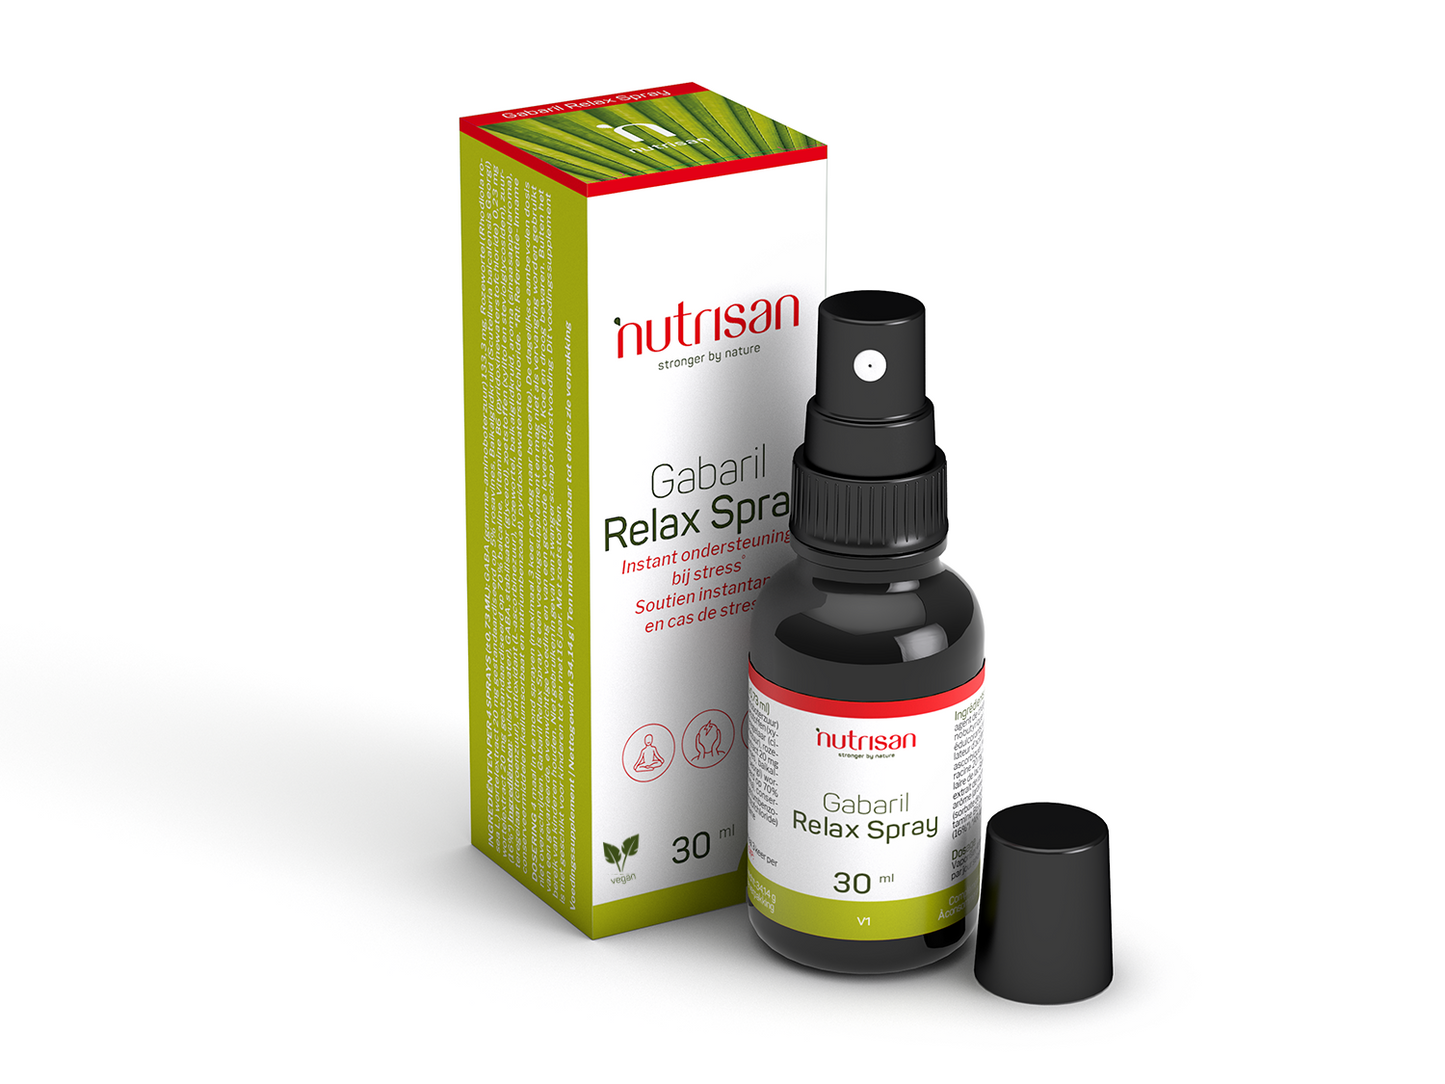 Nutrisan Gabaril Relax Spray - Supplement voor stress